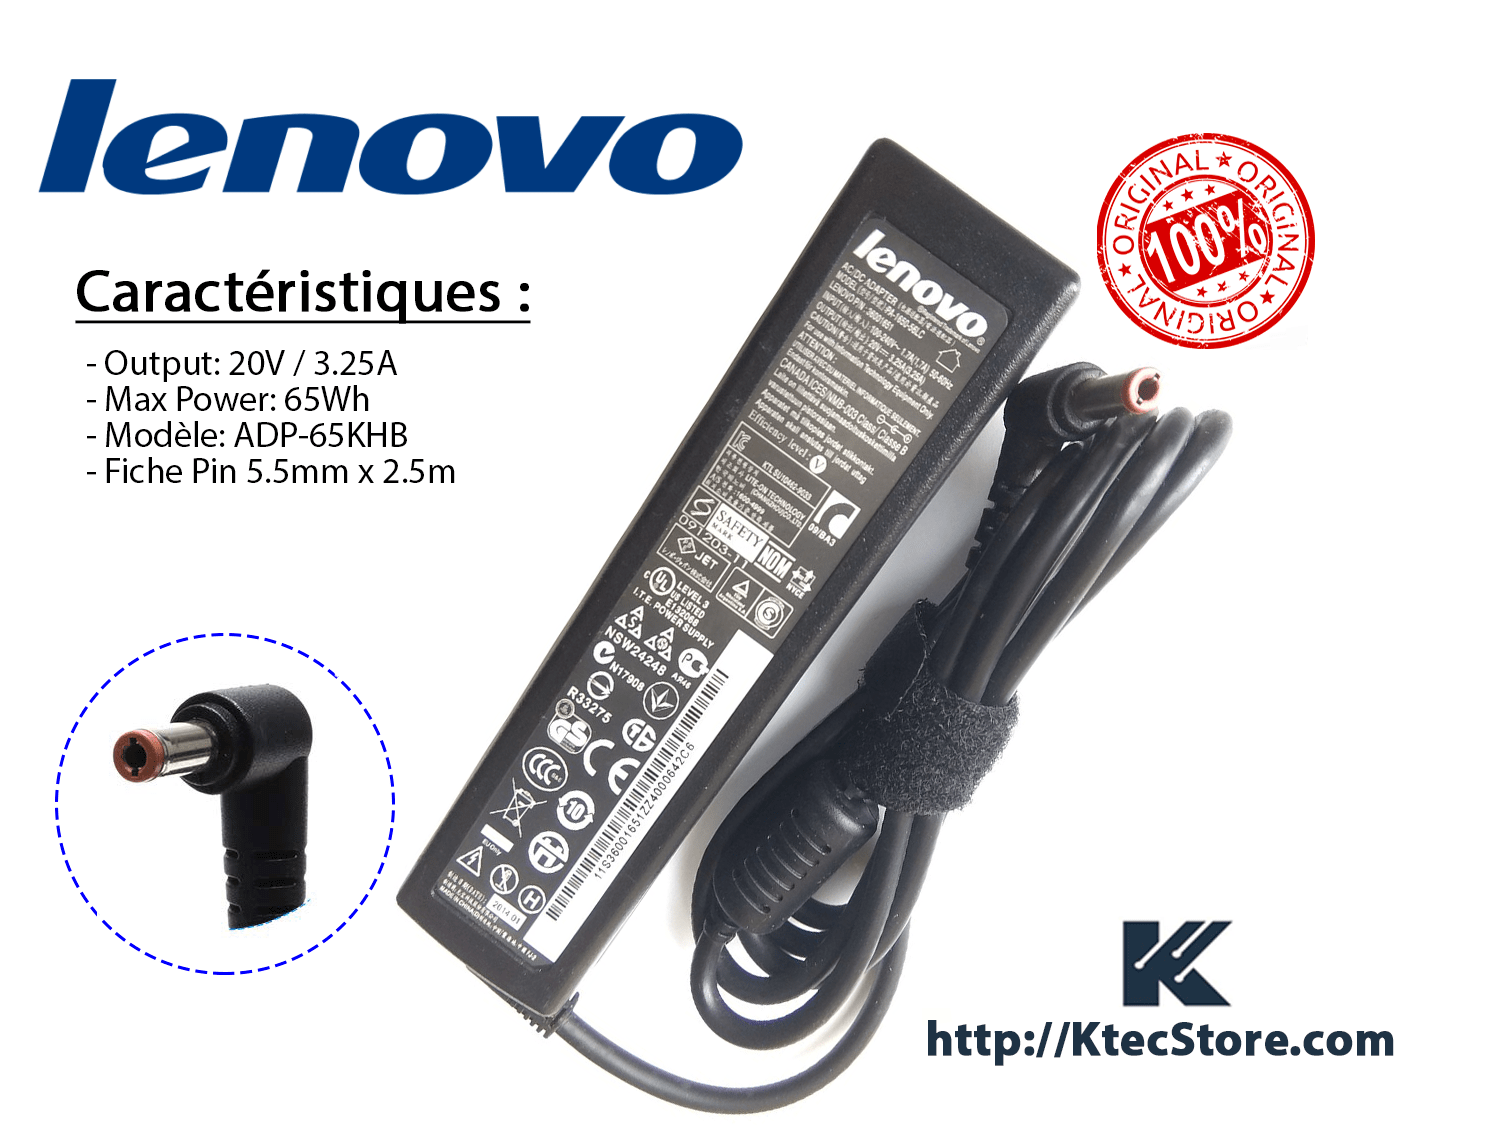 Chargeur LENOVO 230W ORIGINAL 20V / 11.5A Connecteur USB - KtecStore